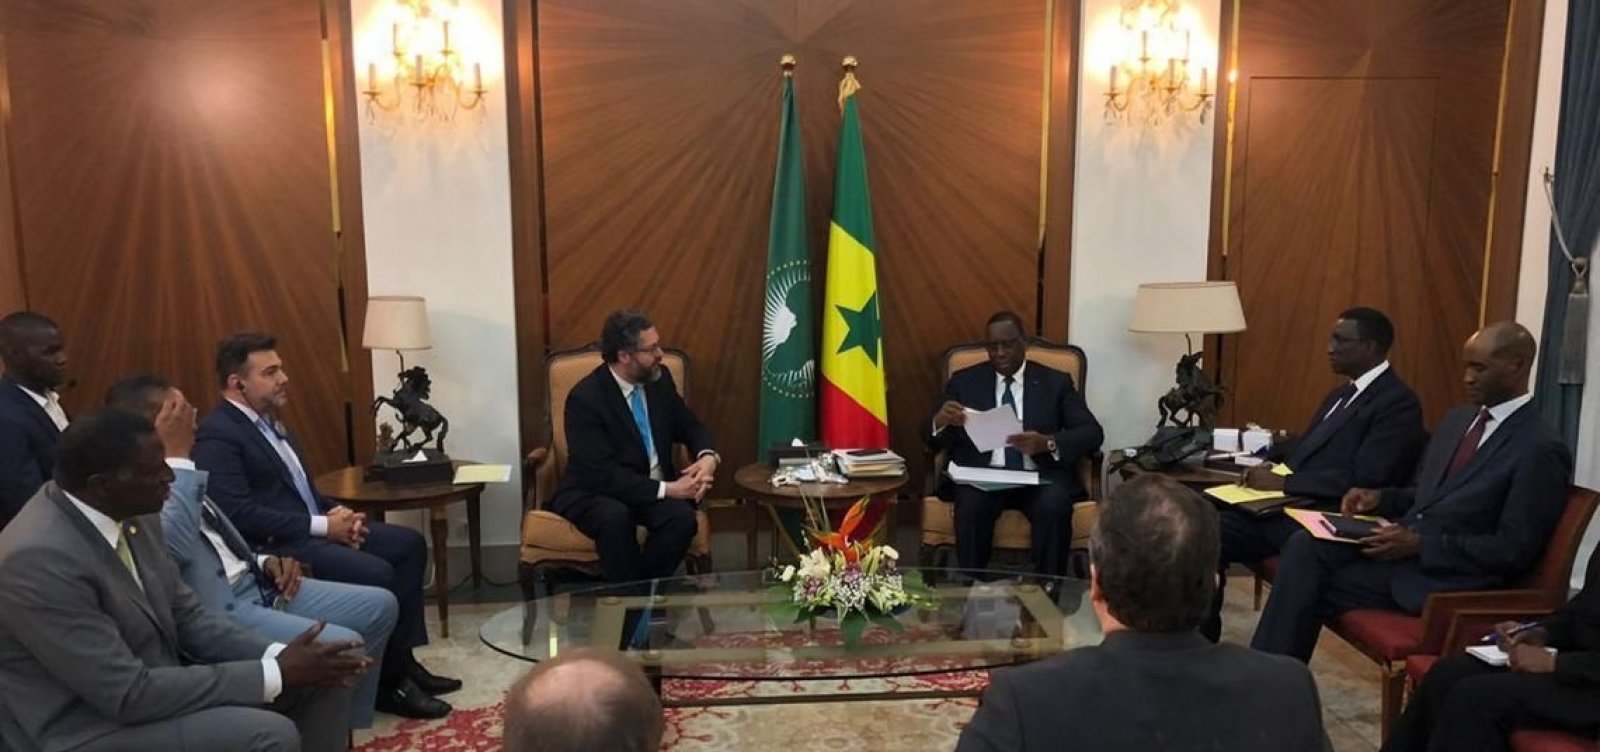 Governo convida presidente do Senegal a visitar o Brasil em 2020